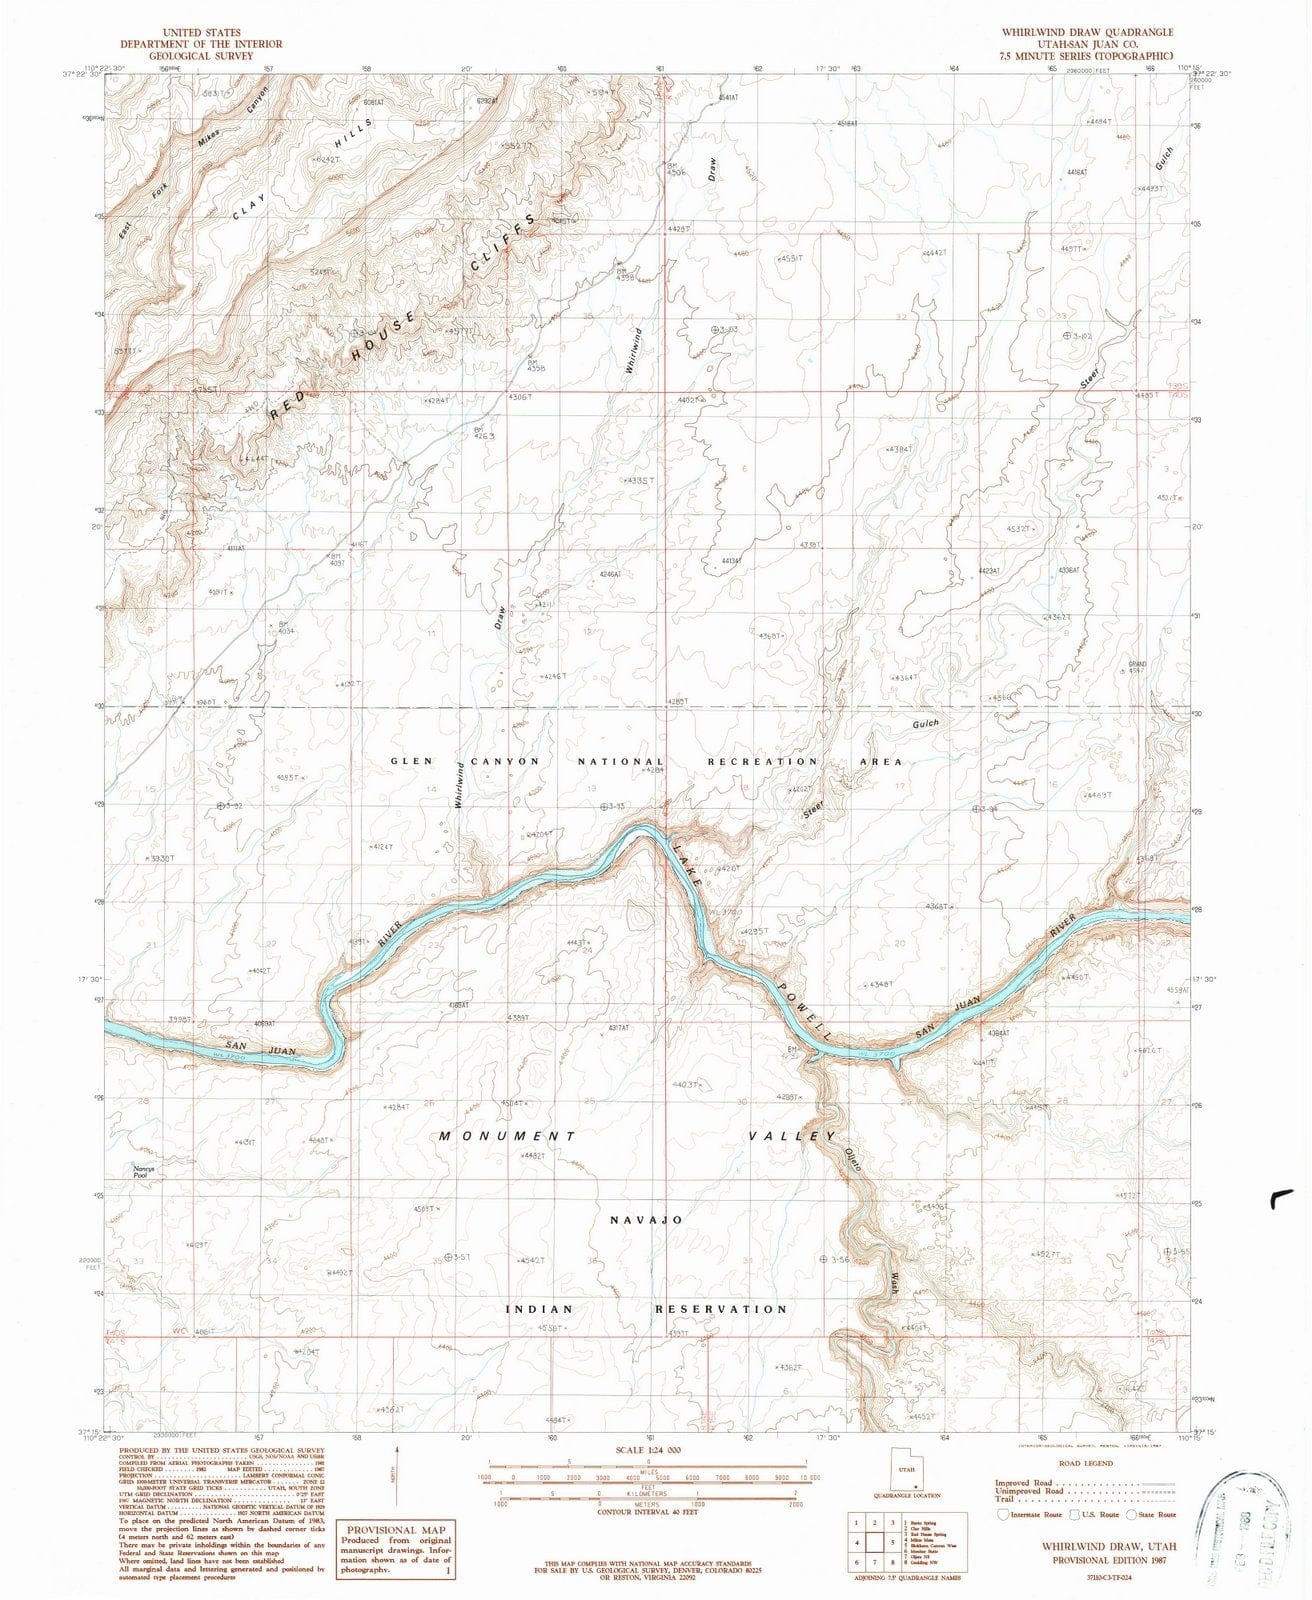 1987 Whirlwindraw, UT - Utah - USGS Topographic Map